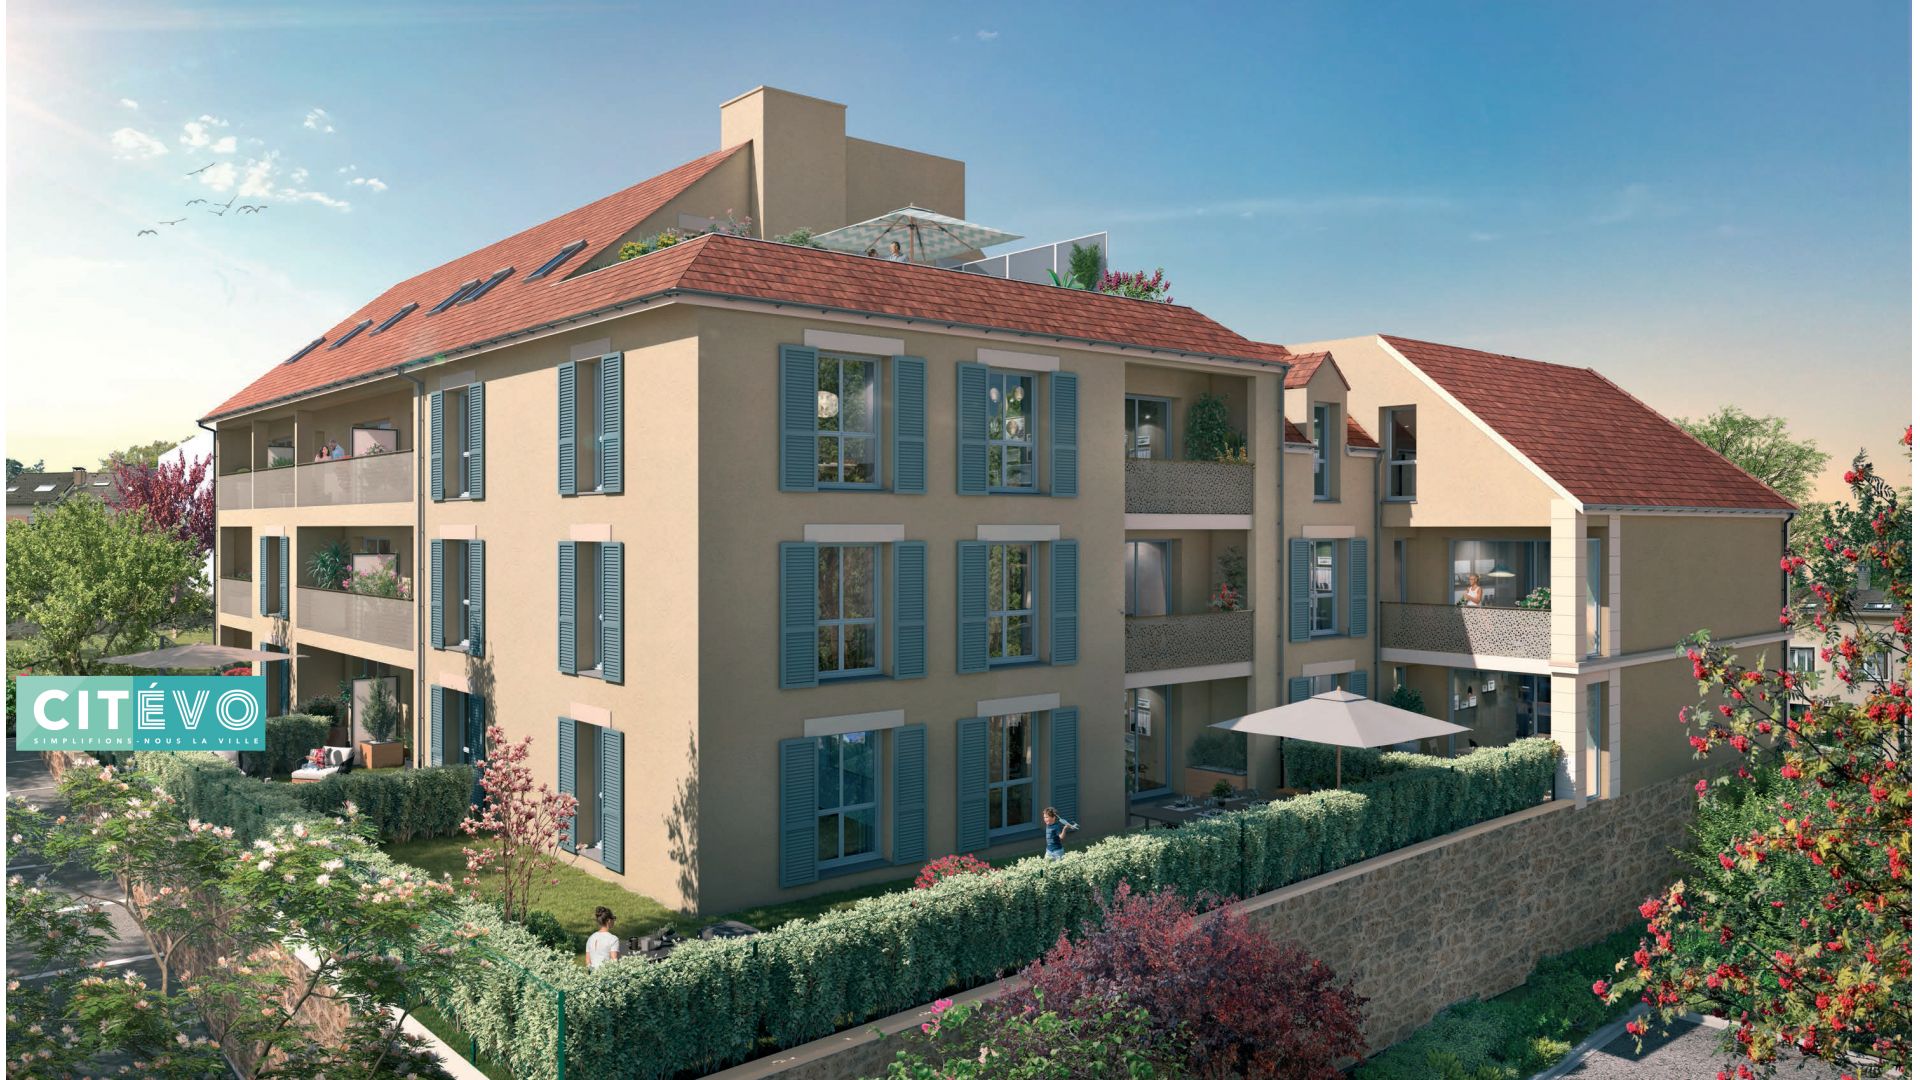 Greencity immobilier - achat appartements neufs du T1 au T4Duplex - Résidence Clos Séverac - 91290 Arpajon